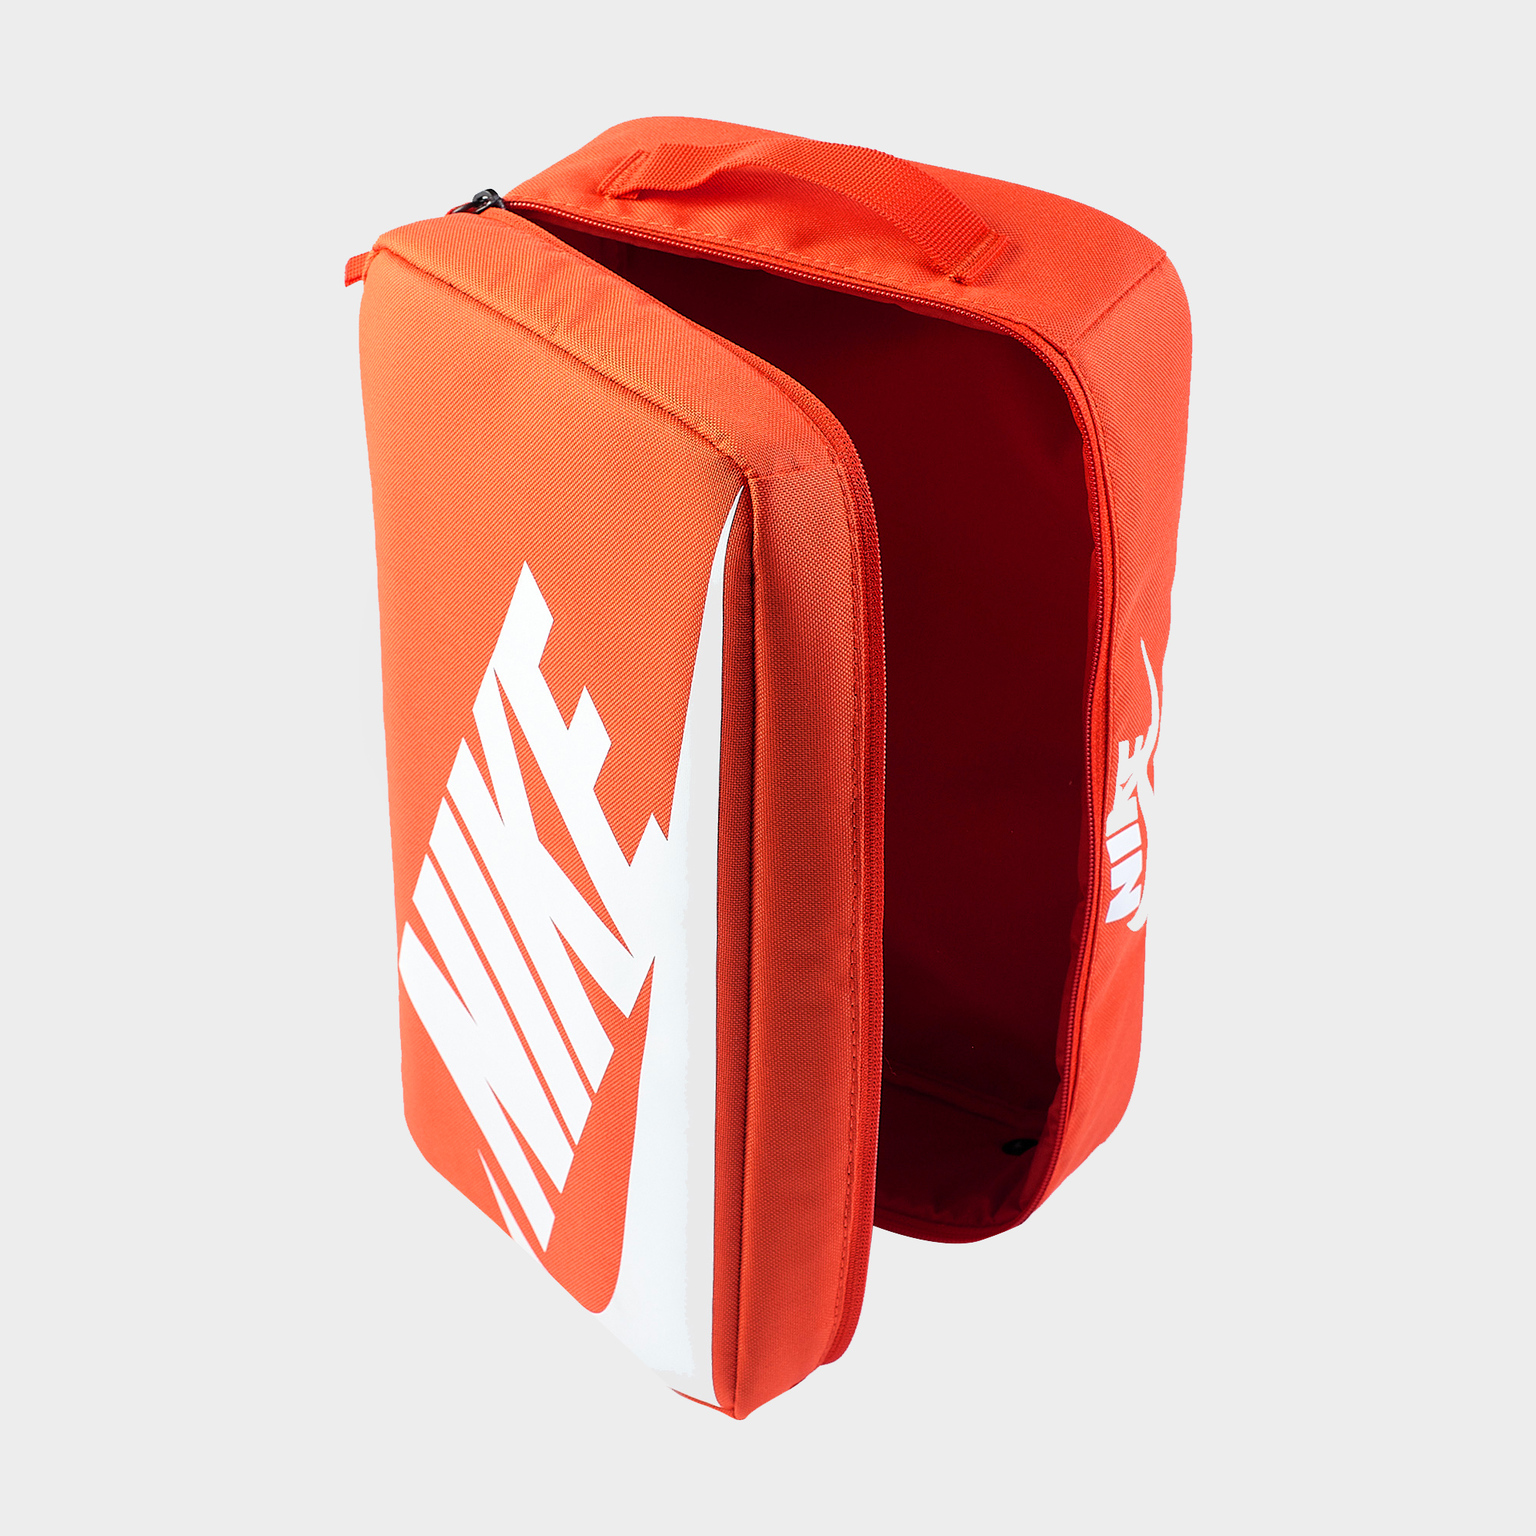 Сумка для обуви Nike Shoebox Bag BA6149-810